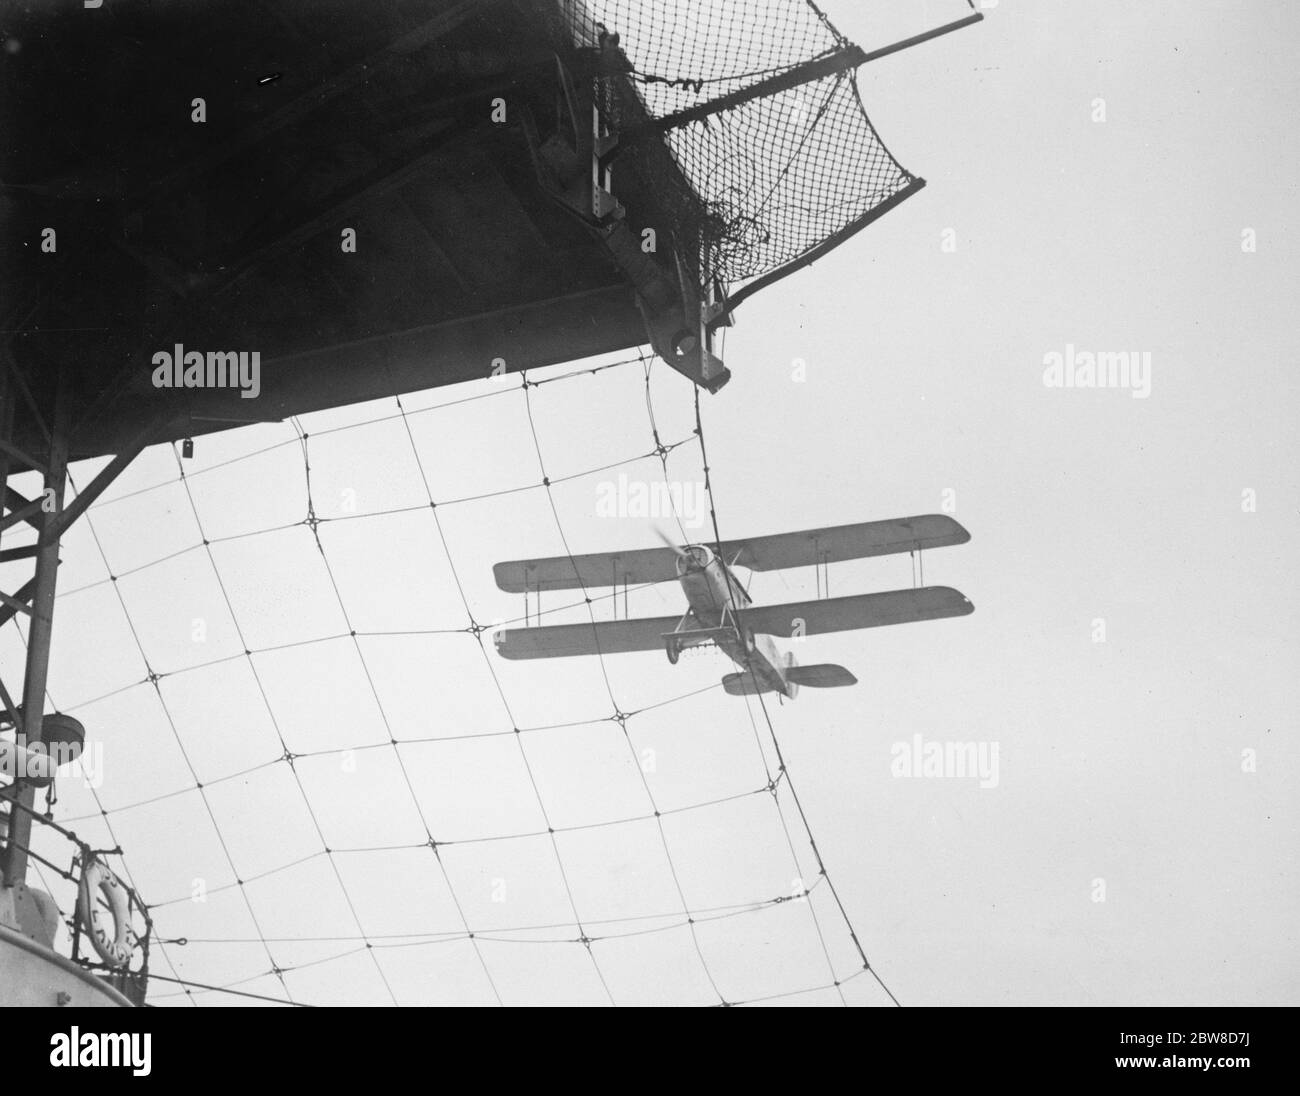 Come atterrano gli aerei su un aerodromo galleggiante . Un aereo navale in procinto di atterrare vicino a San Diego sul ponte della portaerei statunitense USS Langley . Notare la schermatura del filo di schermatura per evitare che il piano si appolga sul piano inferiore . 3 dicembre 1926 Foto Stock